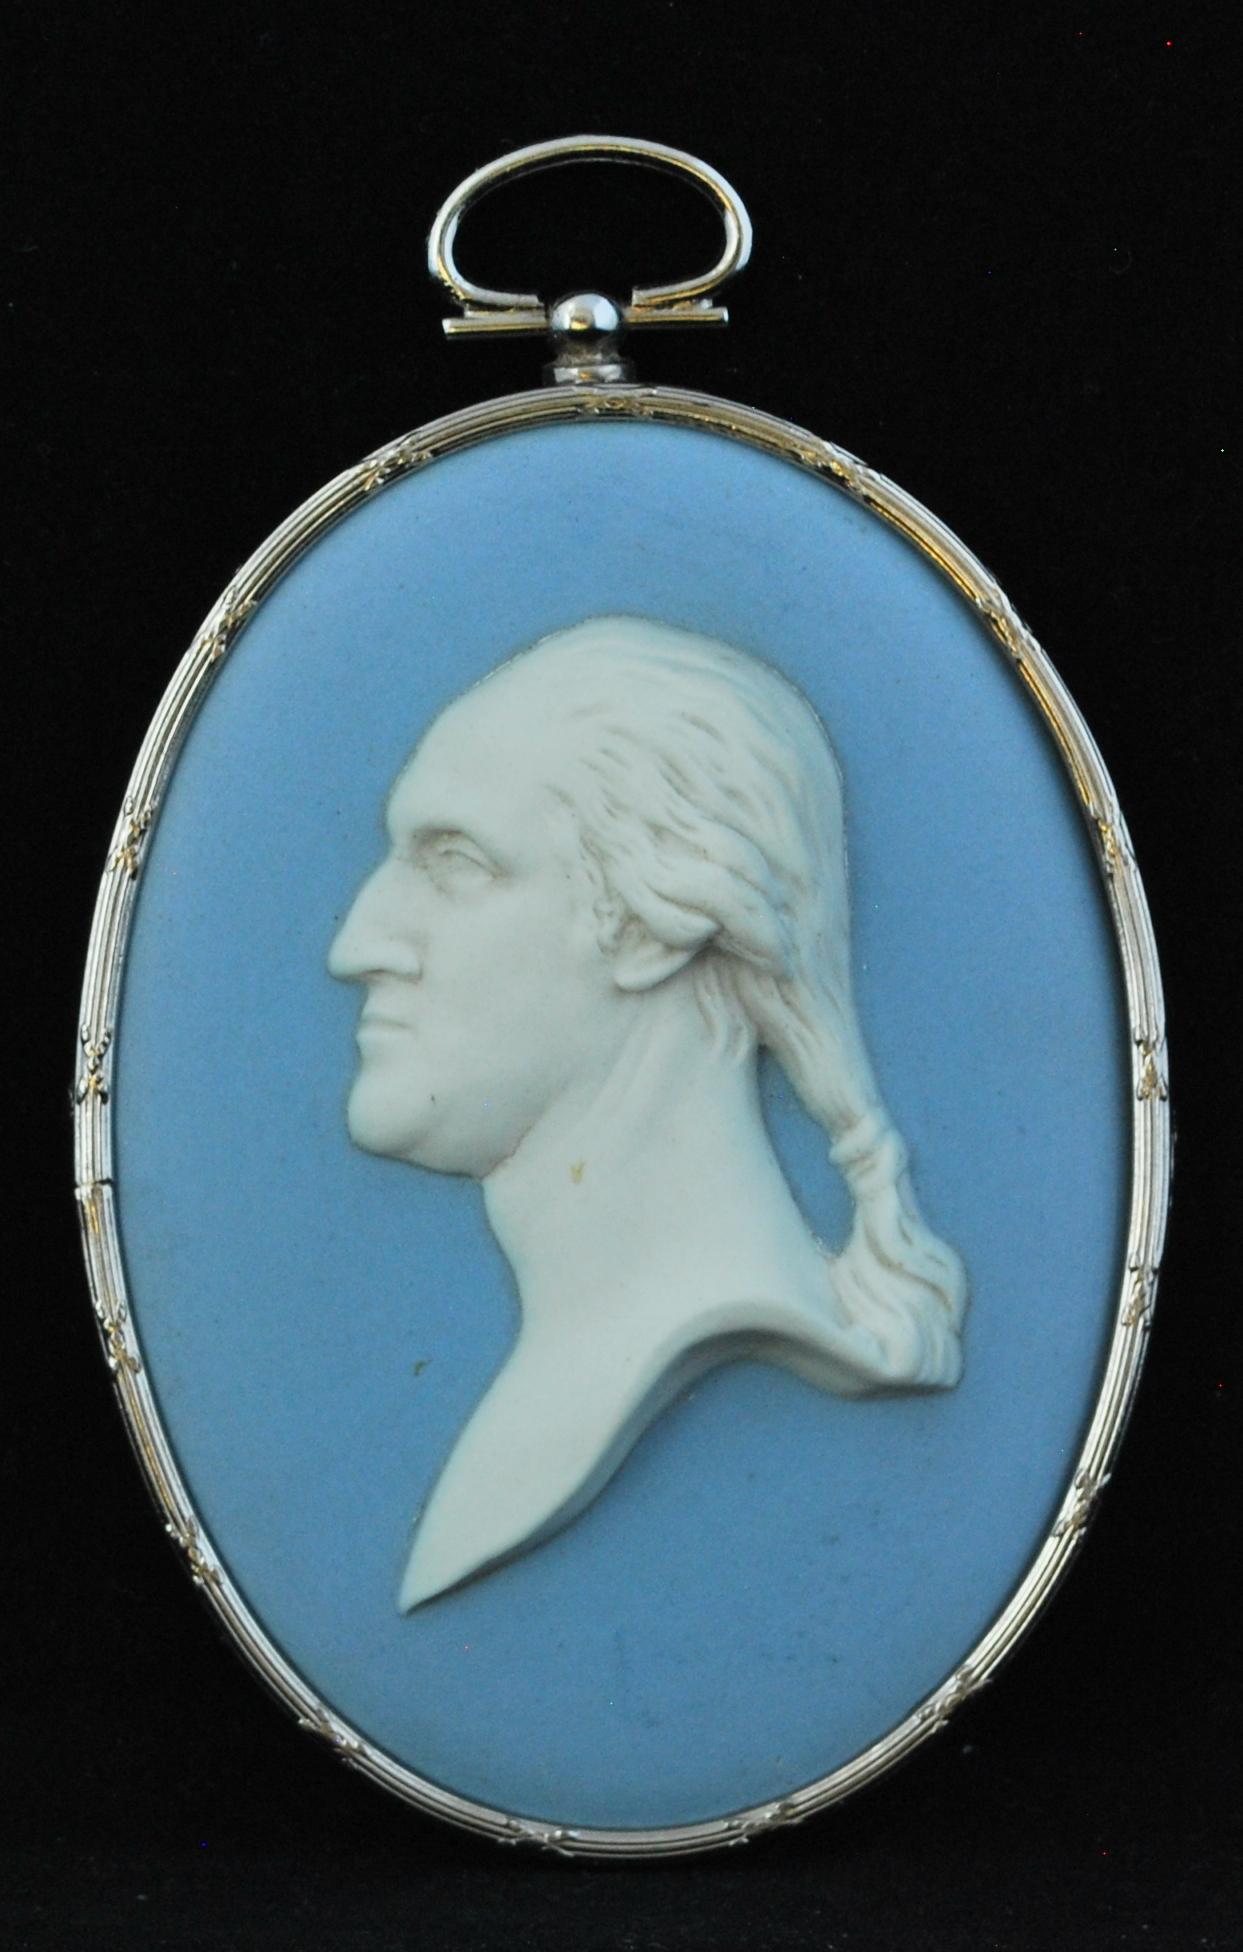 Un portrait en médaillon de George Washington, en jaspe bleu pâle, serti dans un cadre de qualité en argent, cannelé et à bandes croisées. Décorée par Bert Bentley, l'un des meilleurs décorateurs du début du XXe siècle chez Wedgwood.

Ce portrait de